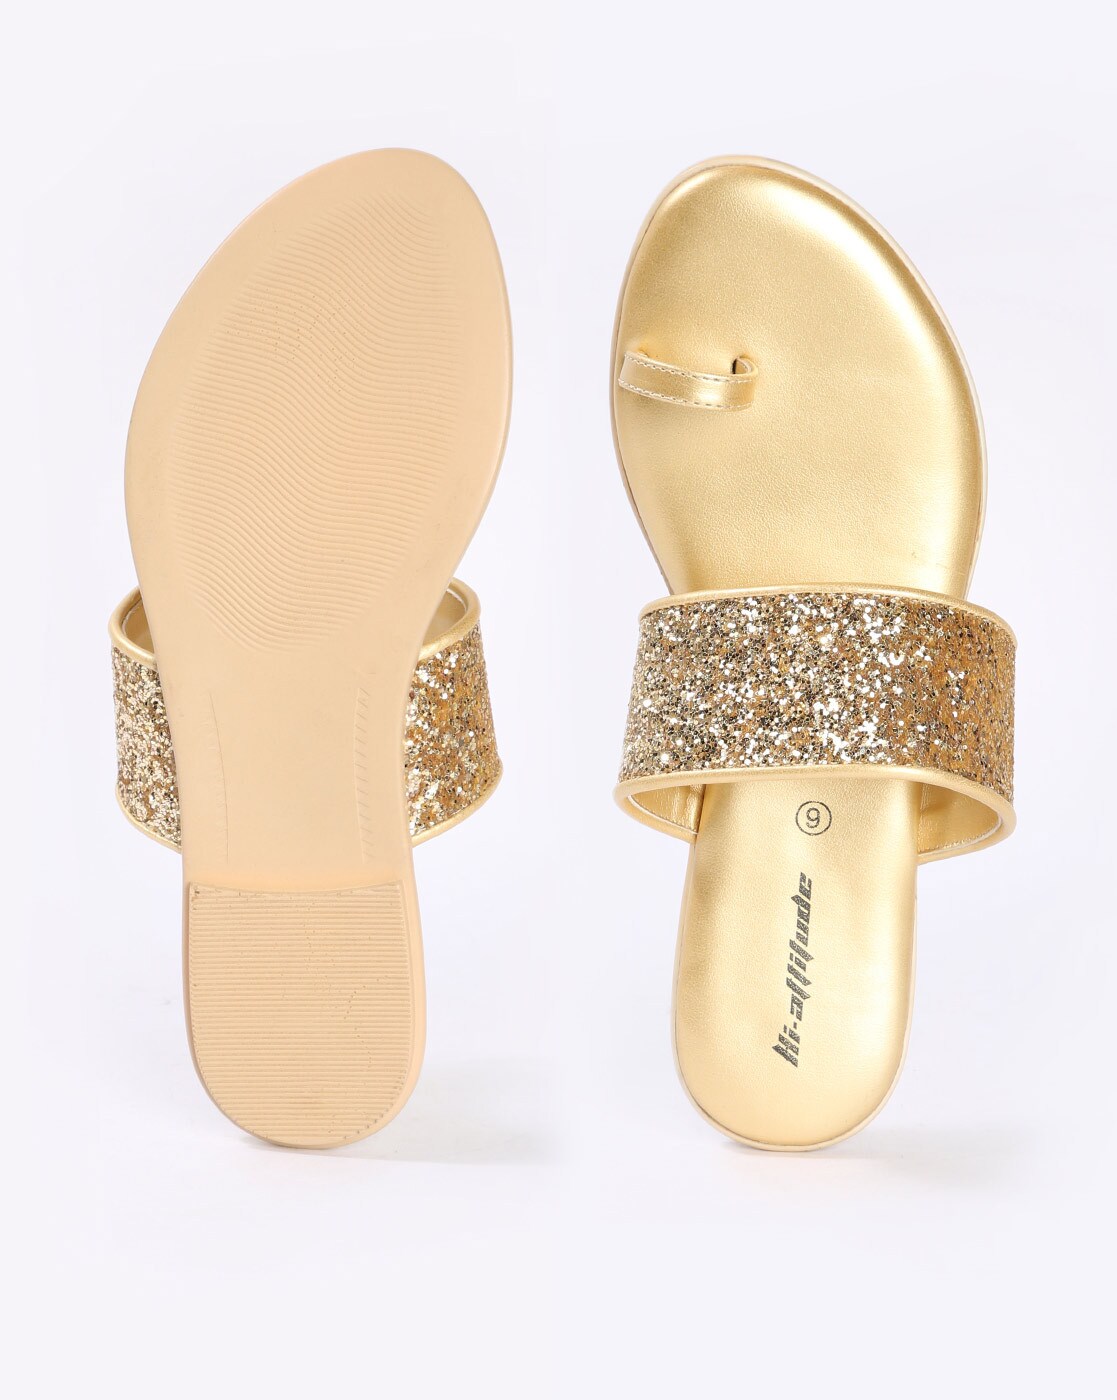 Bebe Slippers Girls Gold Glitter | eBay